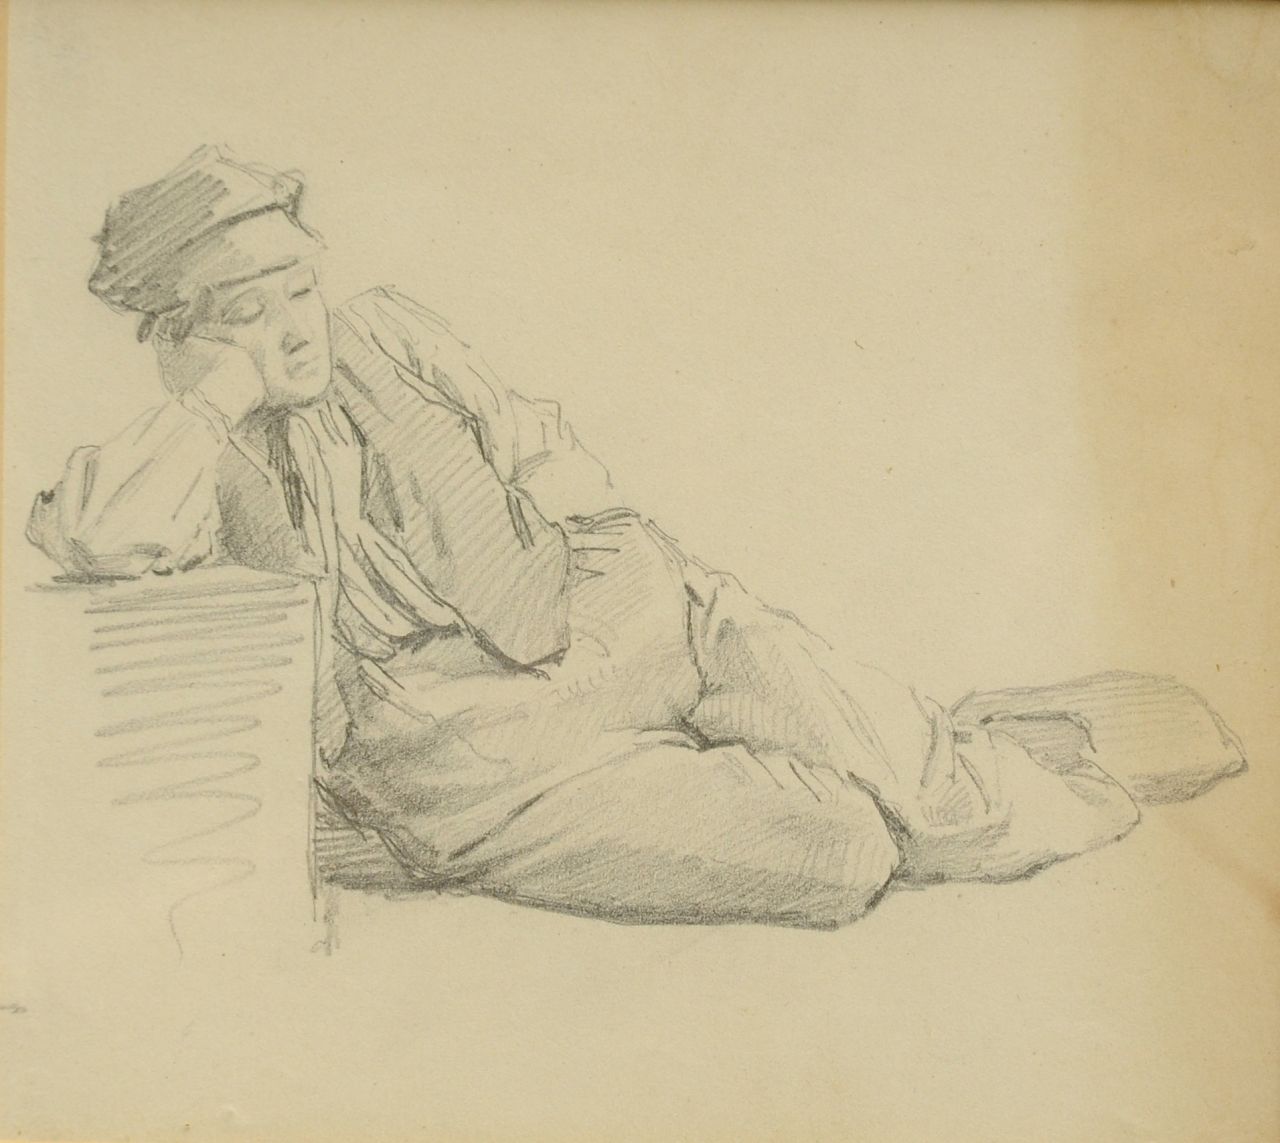 Koekkoek B.C.  | Barend Cornelis Koekkoek, Studium von einem schlafende Bauernknabe, Kreide auf Papier 14,3 x 15,9 cm